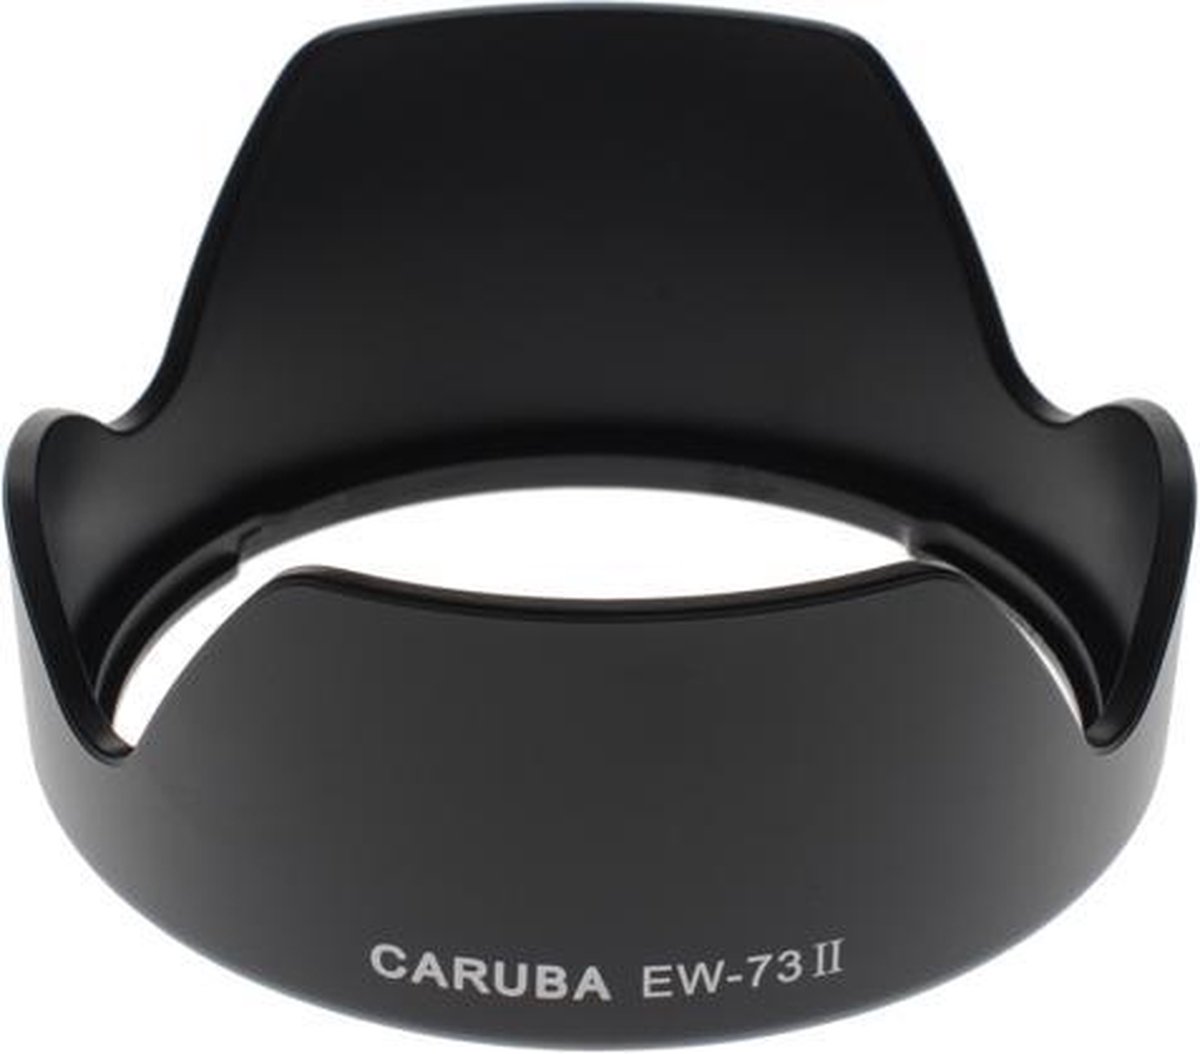 Caruba EW-73II camera lens adapter